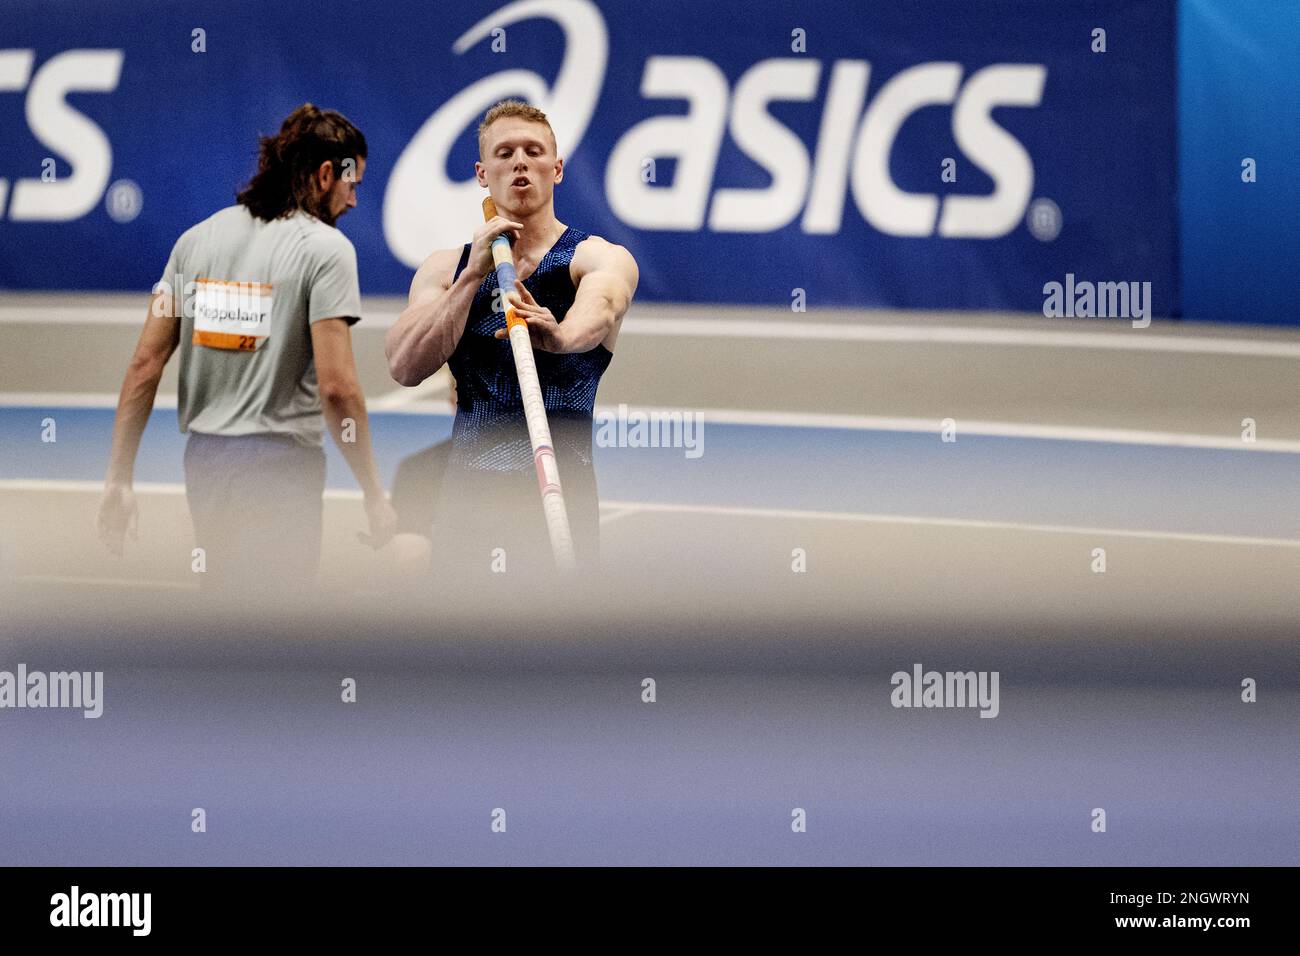 APELDOORN - Pole Vaulters Menno Vloon und Rutger Koppelaar am zweiten Tag der niederländischen Hallenathletik-Meisterschaft. ANP OLAF KRAAK niederlande raus - belgien raus Stockfoto